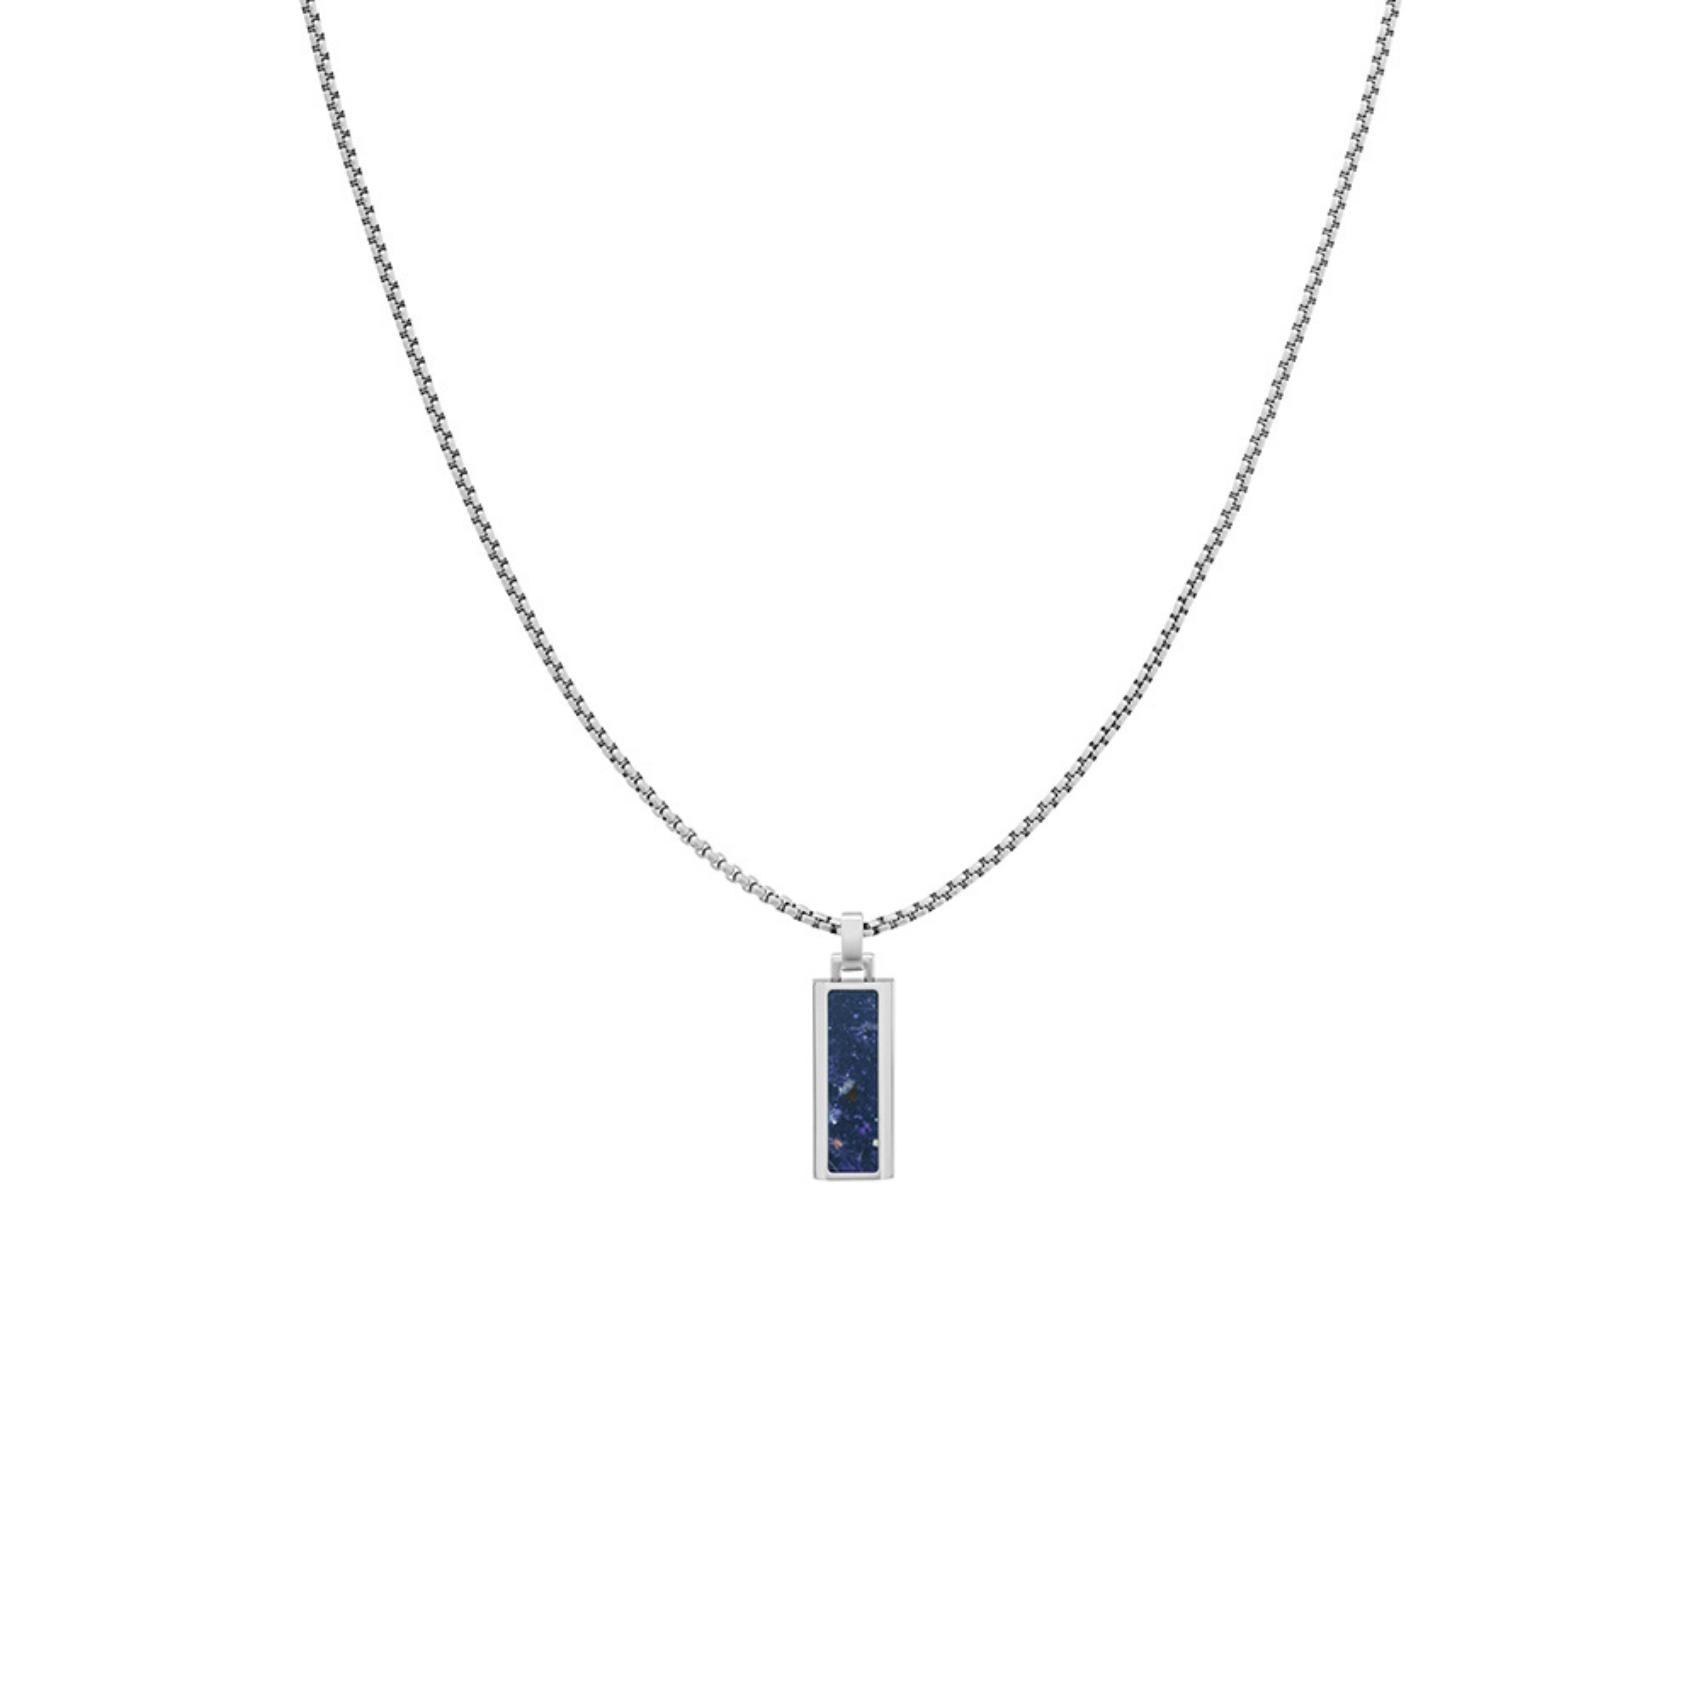 Ανδρικό κολιέ Tommy Hilfiger 2790542, με ορθογώνιο στοιχείο ενσωματομένο στην αλυσίδα κατασκευασμένο από χειρουργικό ατσάλι σε ασημένιο χρώμα με μπλε όνυχα.